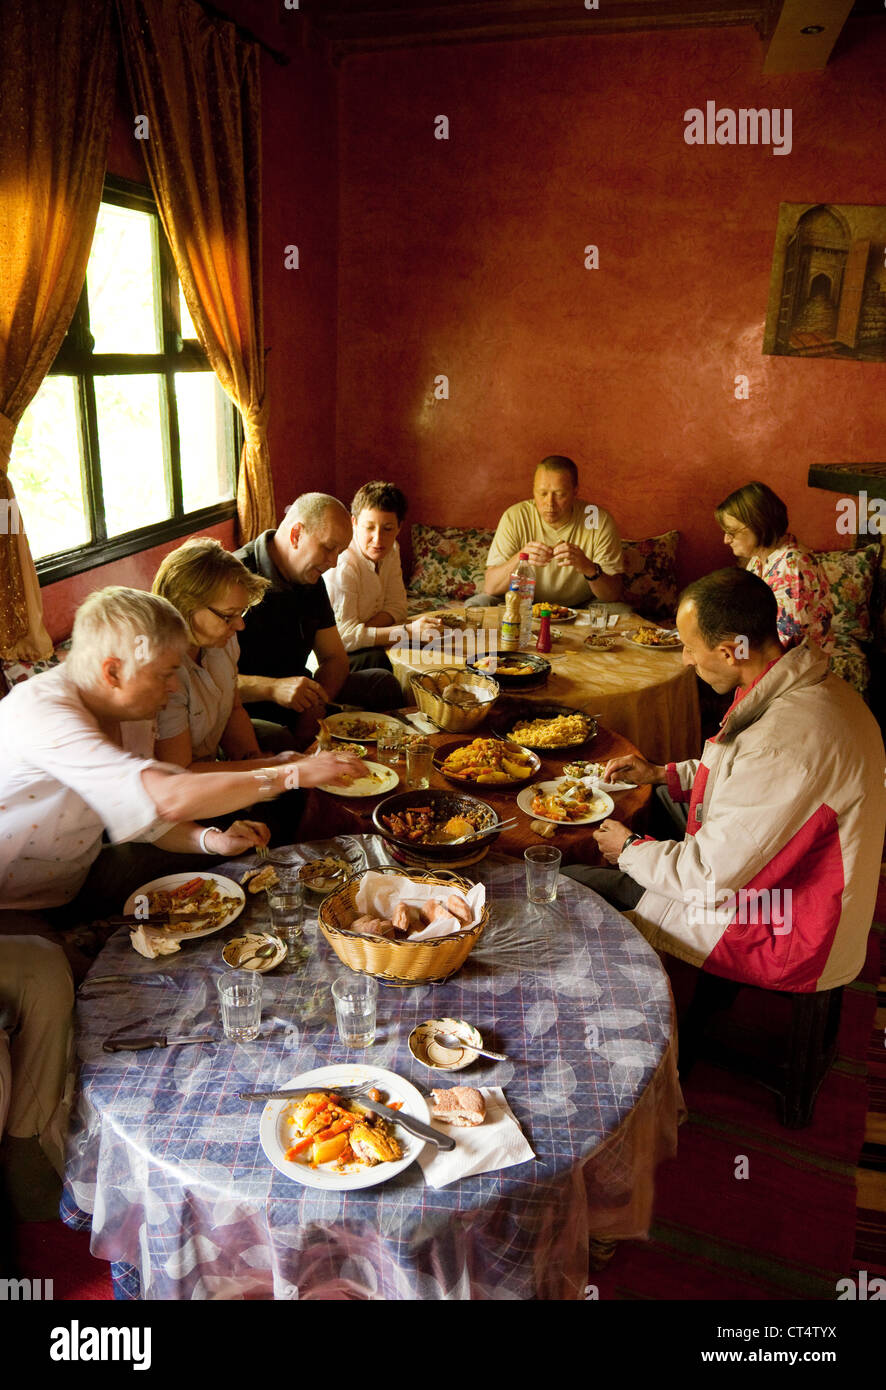 Les touristes ayant un repas traditionnel dans une maison berbère, Haut Atlas, Maroc Sud Banque D'Images